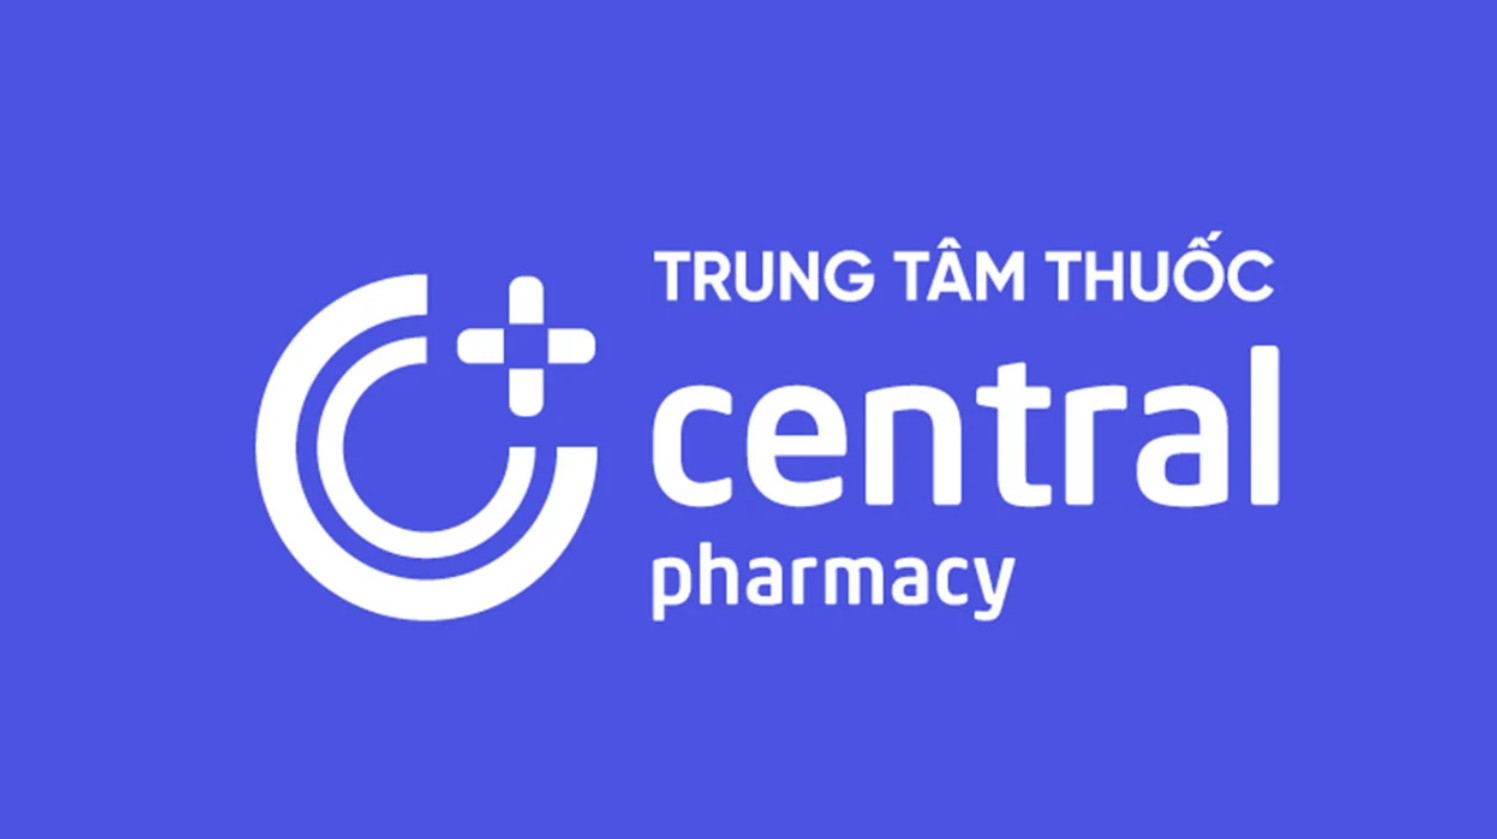 logo-trungtamthuoc-trung-tam-thuoc-central-pharmacy.jpg